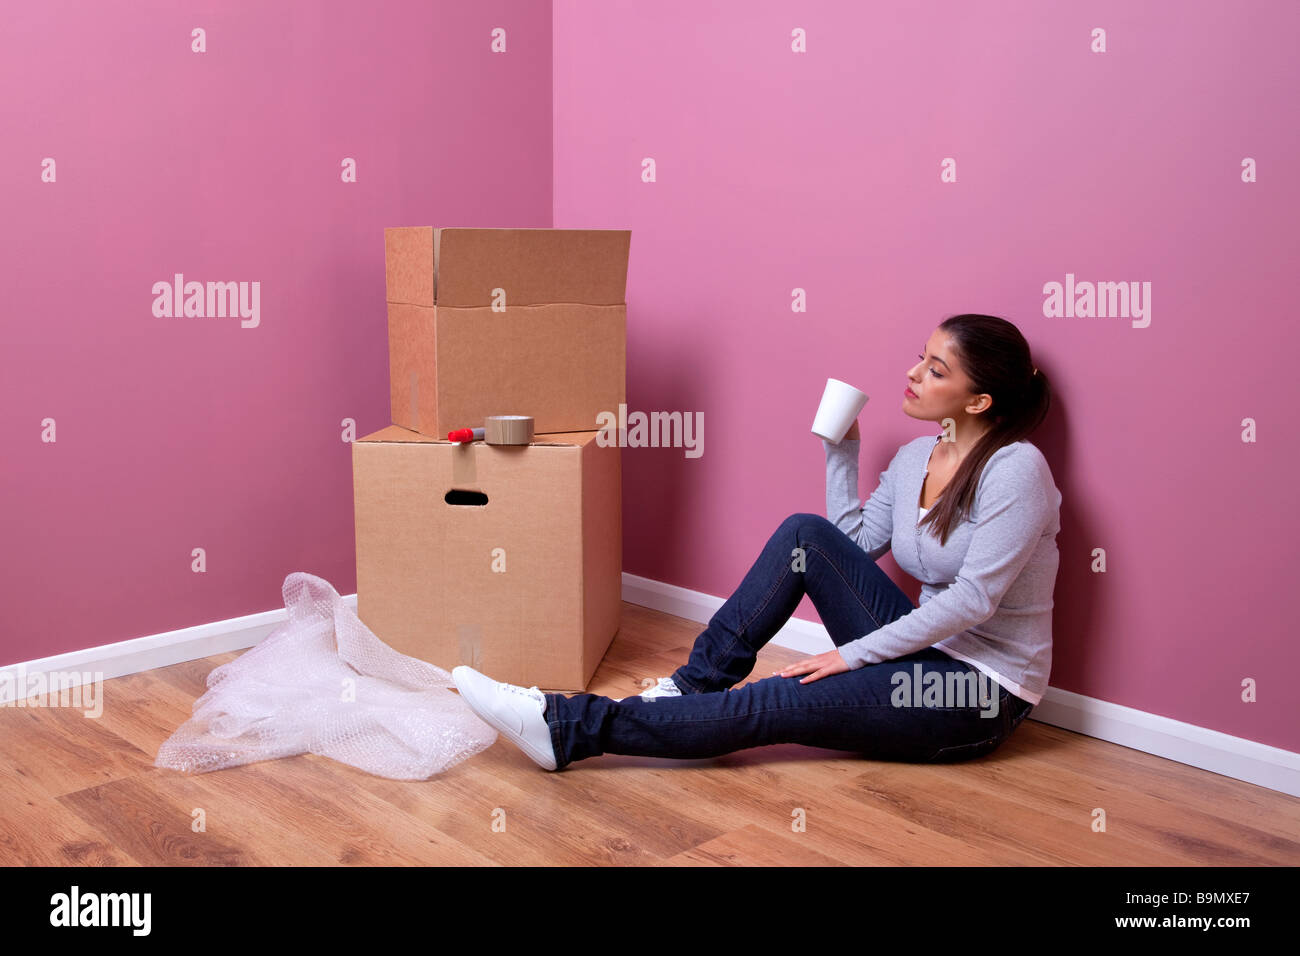 Eine attraktive junge Frau nimmt sich eine Auszeit in ihrem Haus-Umzug Stockfoto